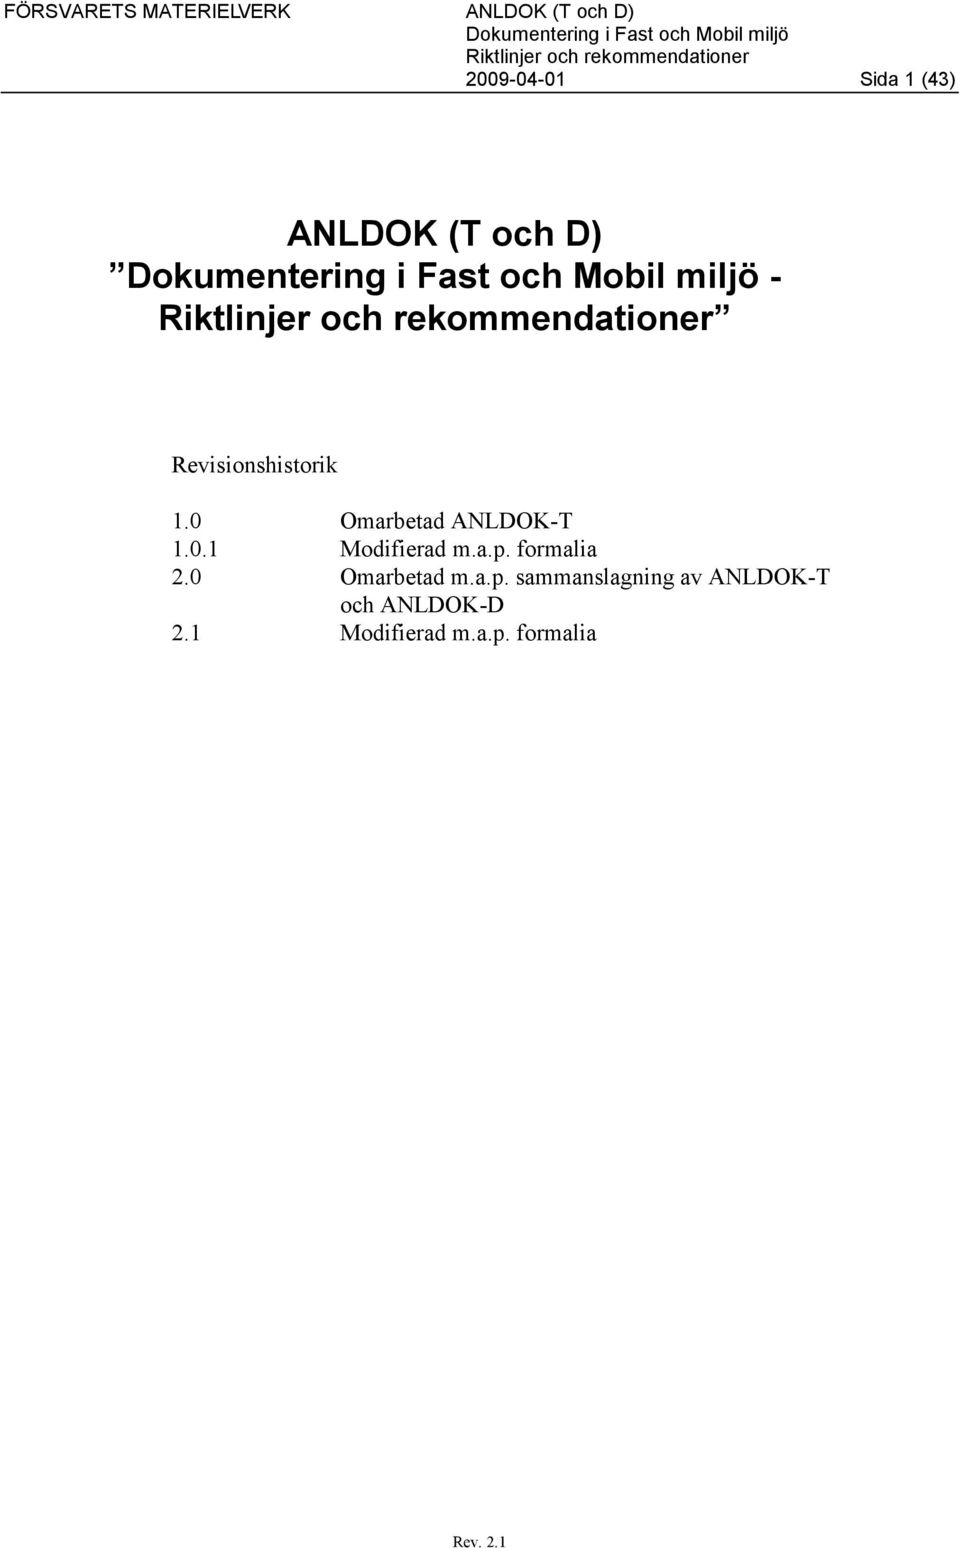 a.p. formalia 2.0 Omarbetad m.a.p. sammanslagning av ANLDOK-T och ANLDOK-D 2.